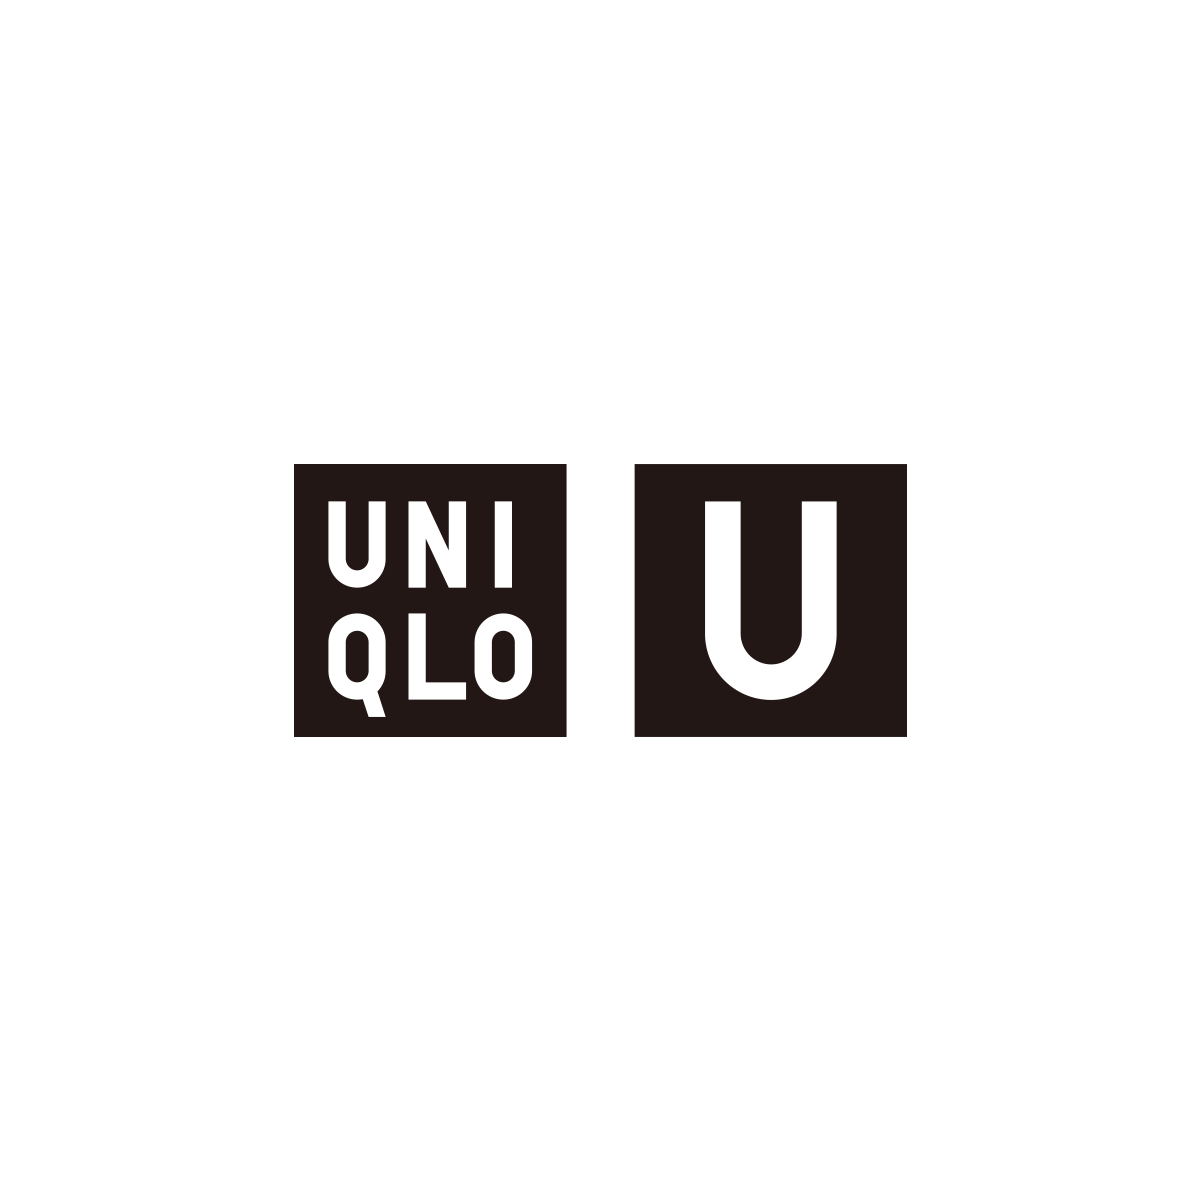 Uniqlo_FB_UNIQLOU_1.07.18_FINAL.png